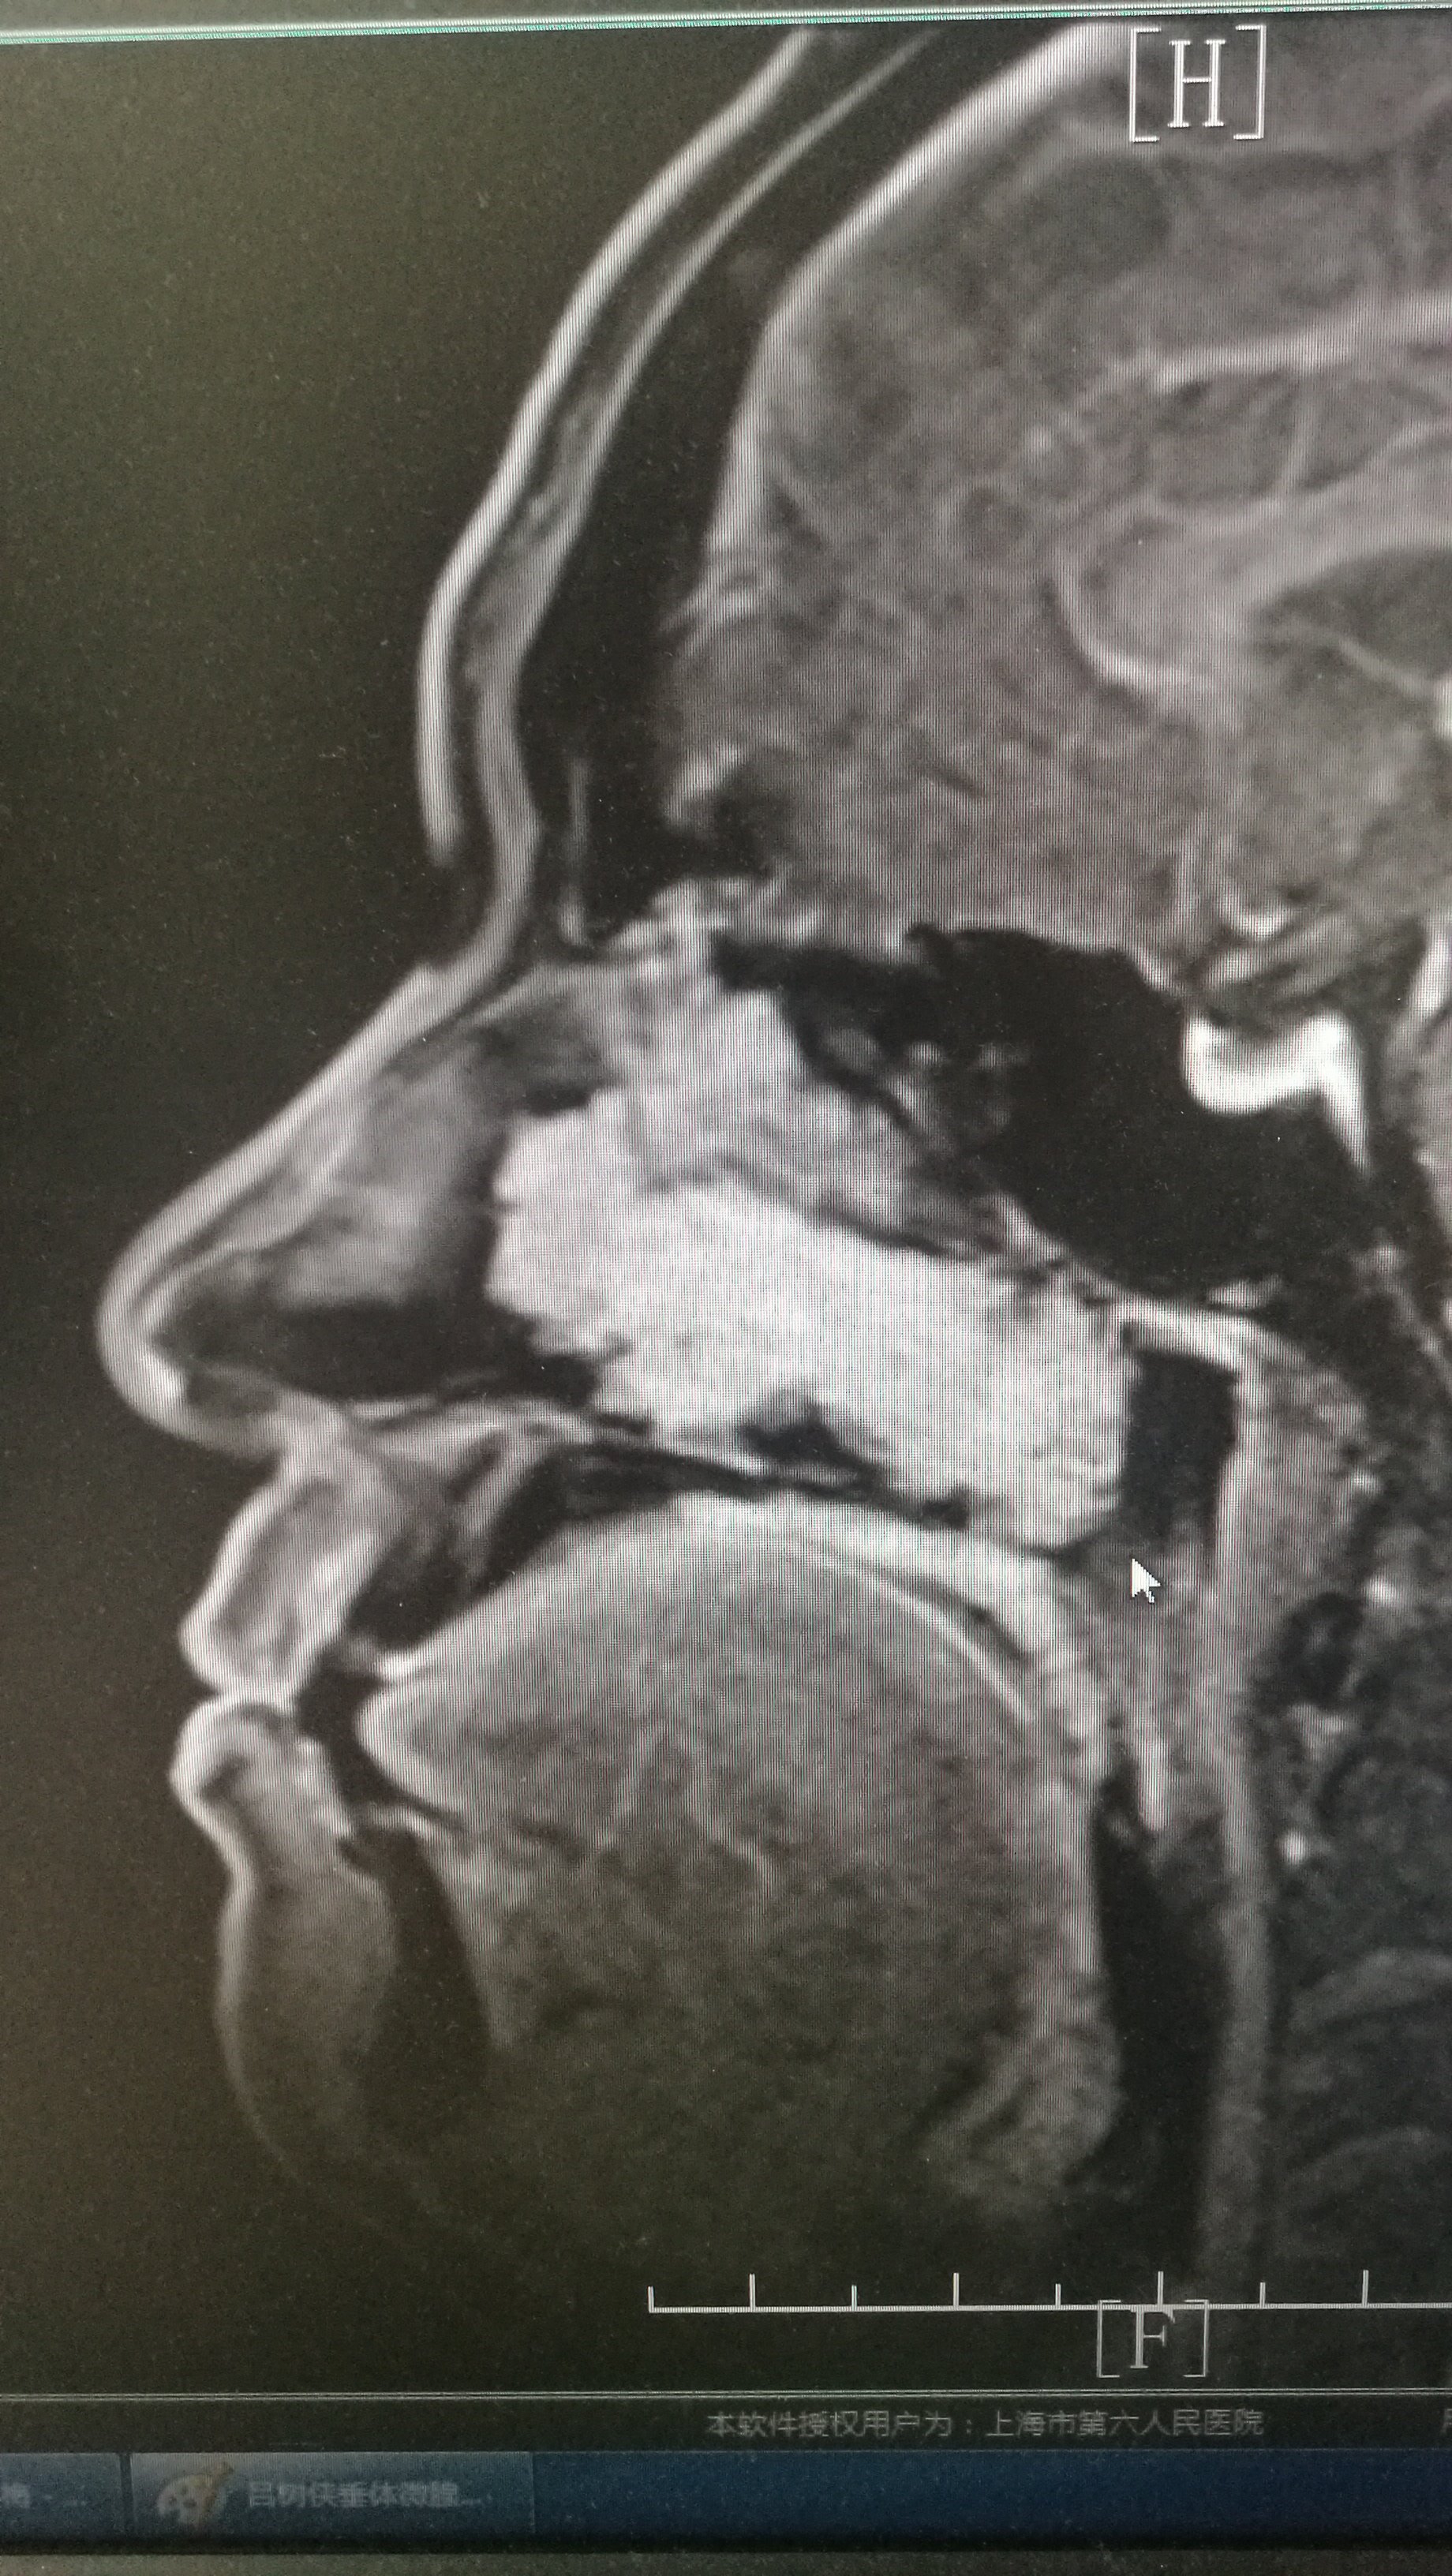 鼻窦骨瘤图片图片